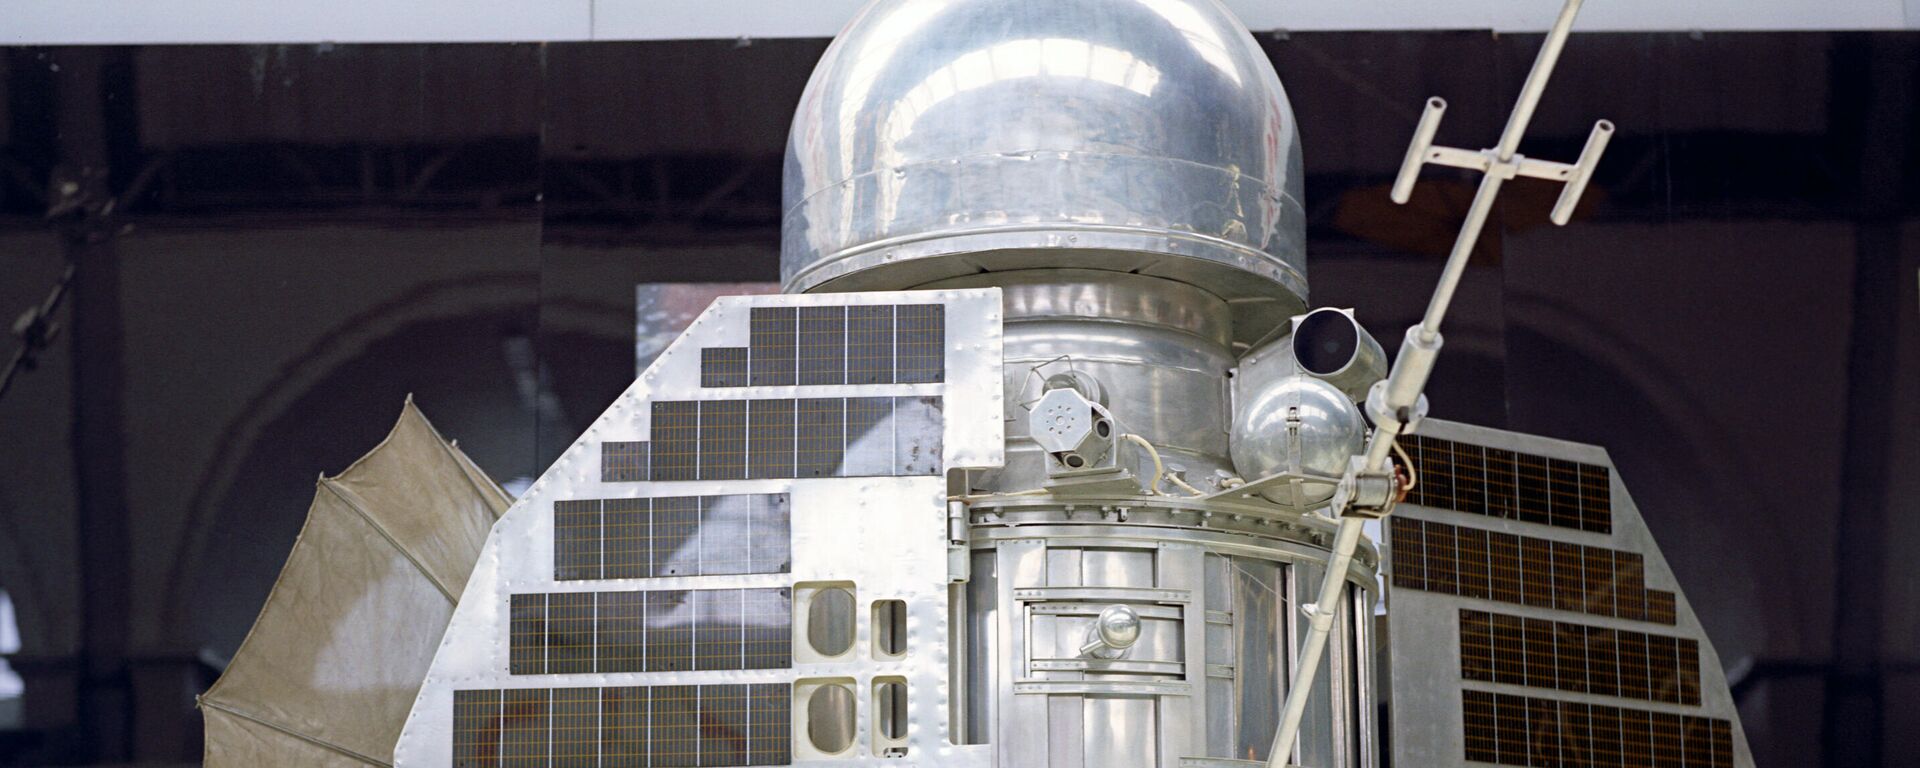 La estación automática interplanetaria soviética Venera -1 - Sputnik Mundo, 1920, 12.02.2021